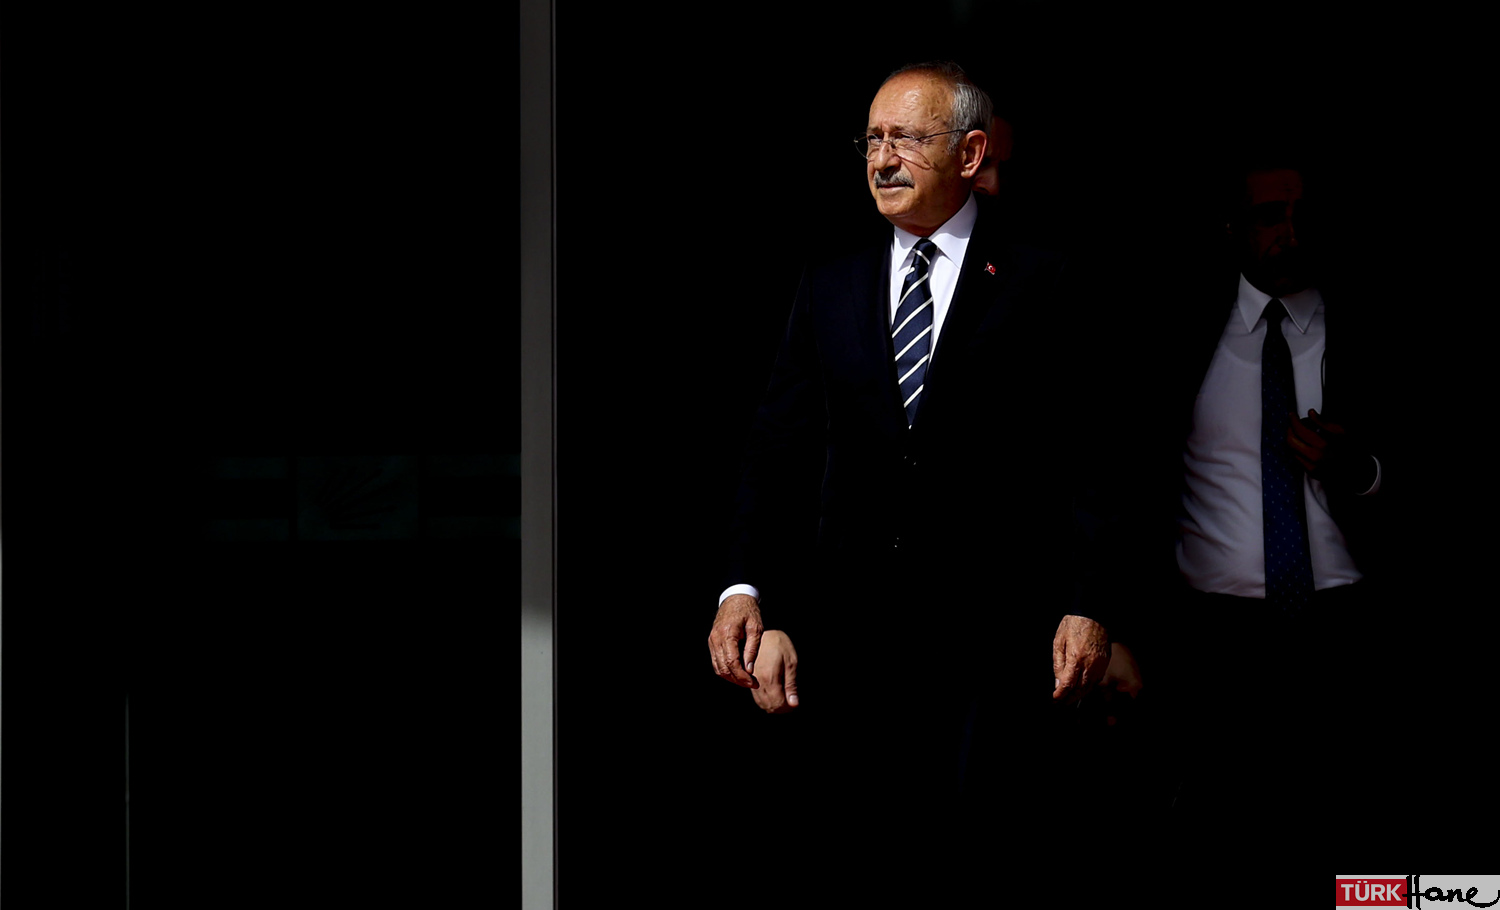 Kılıçdaroğlu, Erdoğan’a açtığı ‘beş kuruşluk’ davayı kazandı